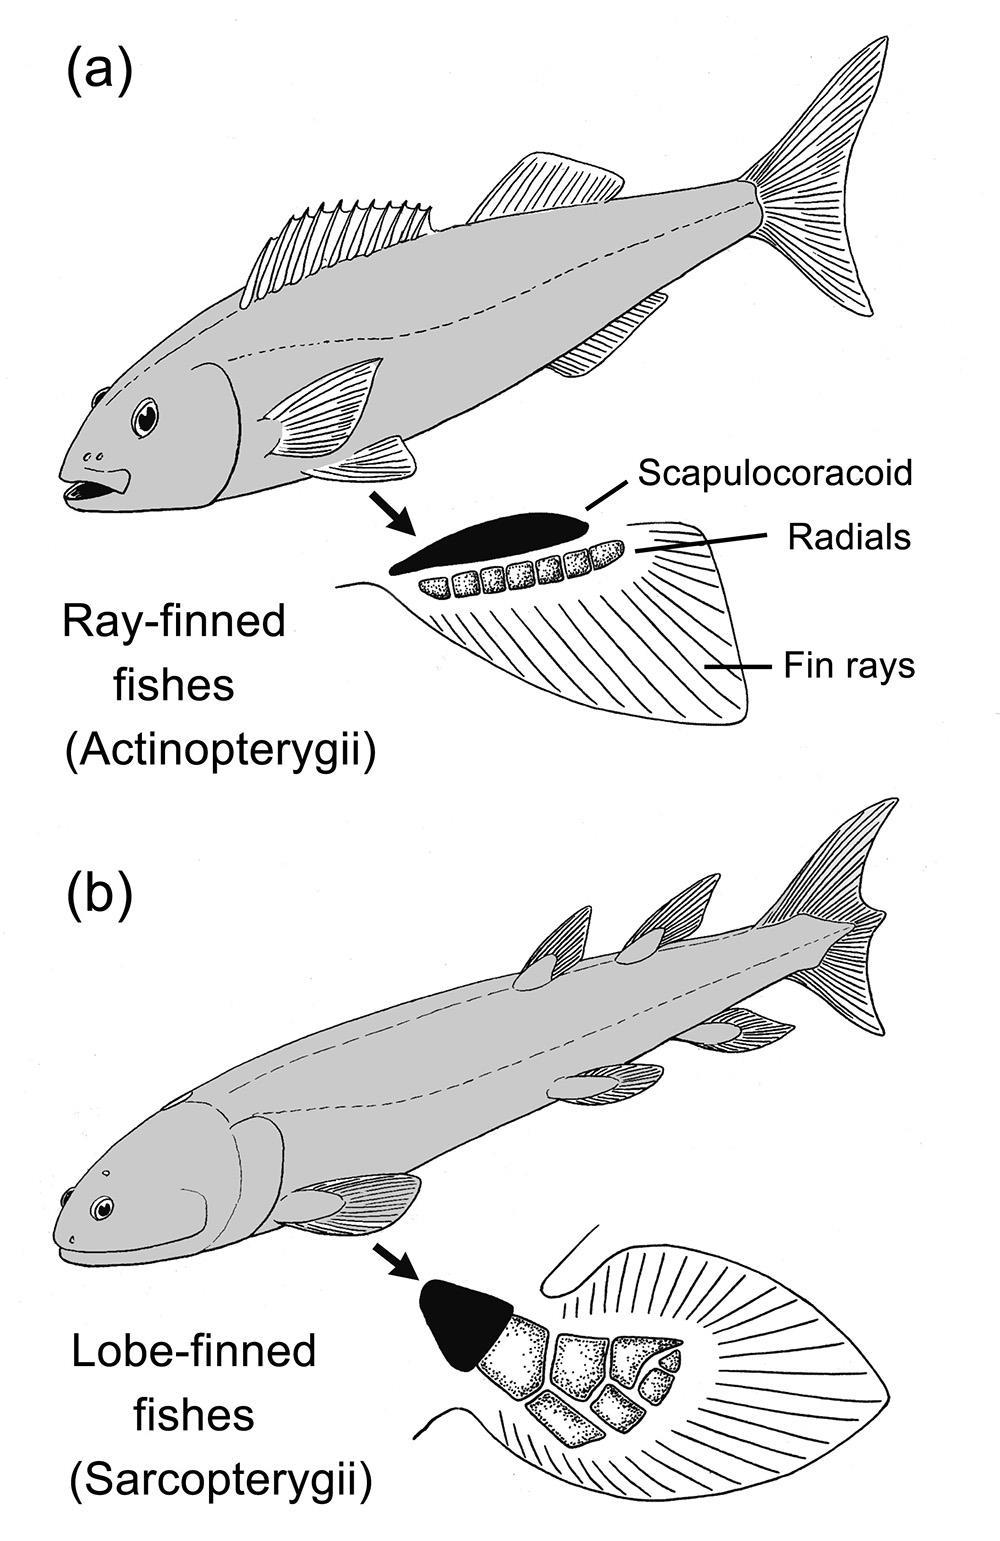 Osteichthyes Classe Actinopterygii Actino = raio Pterígeo = nadadeiras Nadadeiras raiadas desde a base Peixes mais especializados Classe